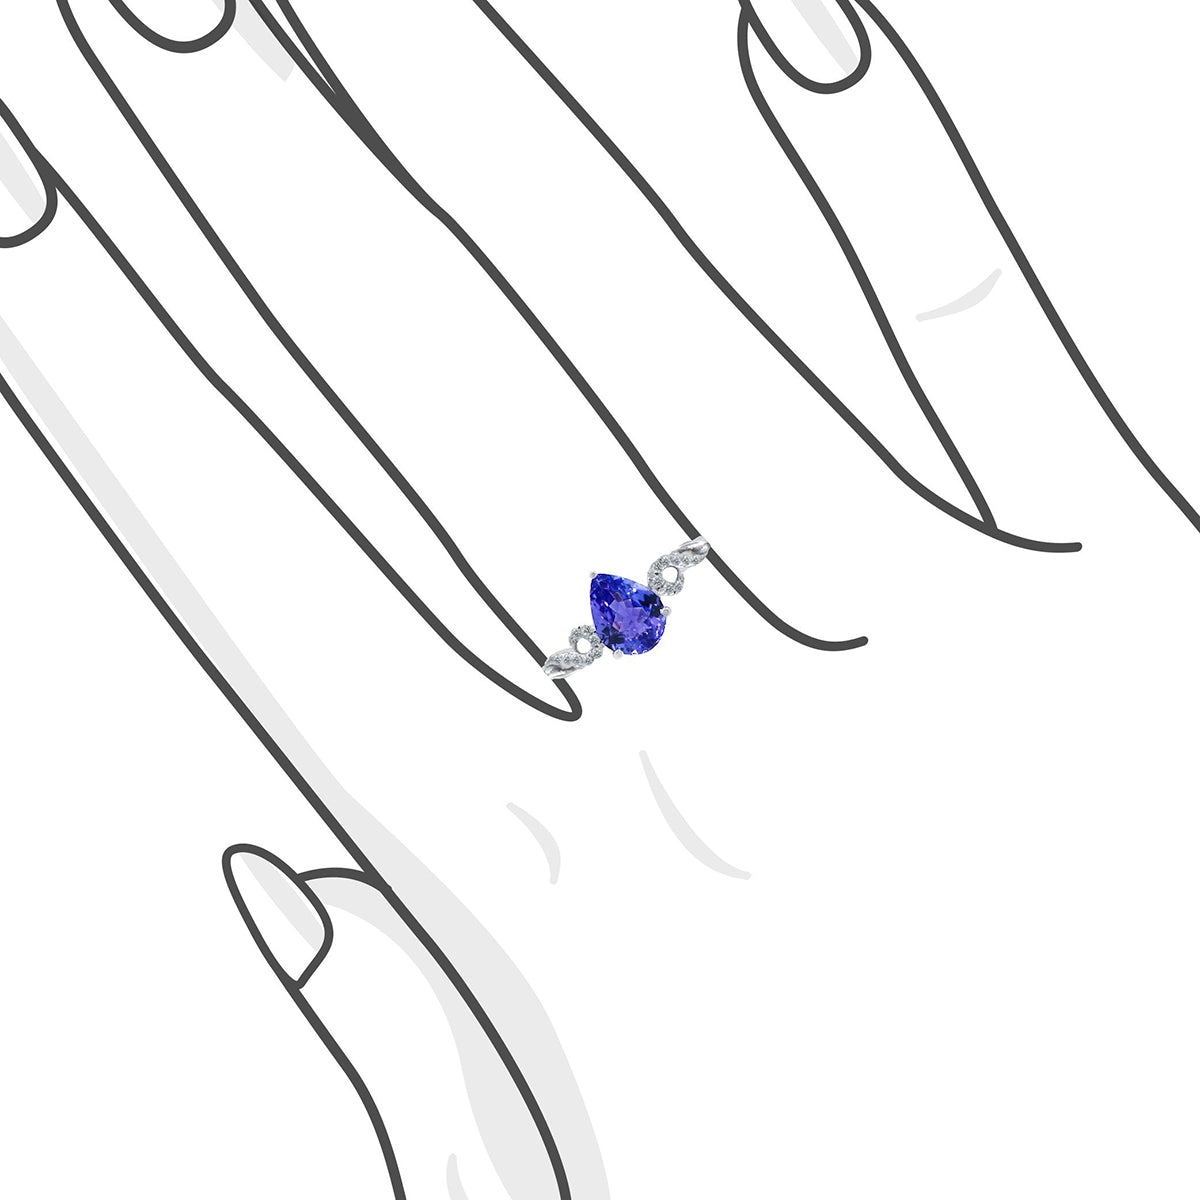 經典三爪梨形紫藍坦桑石與鑽石戒指 - WILLS JEWELLERY